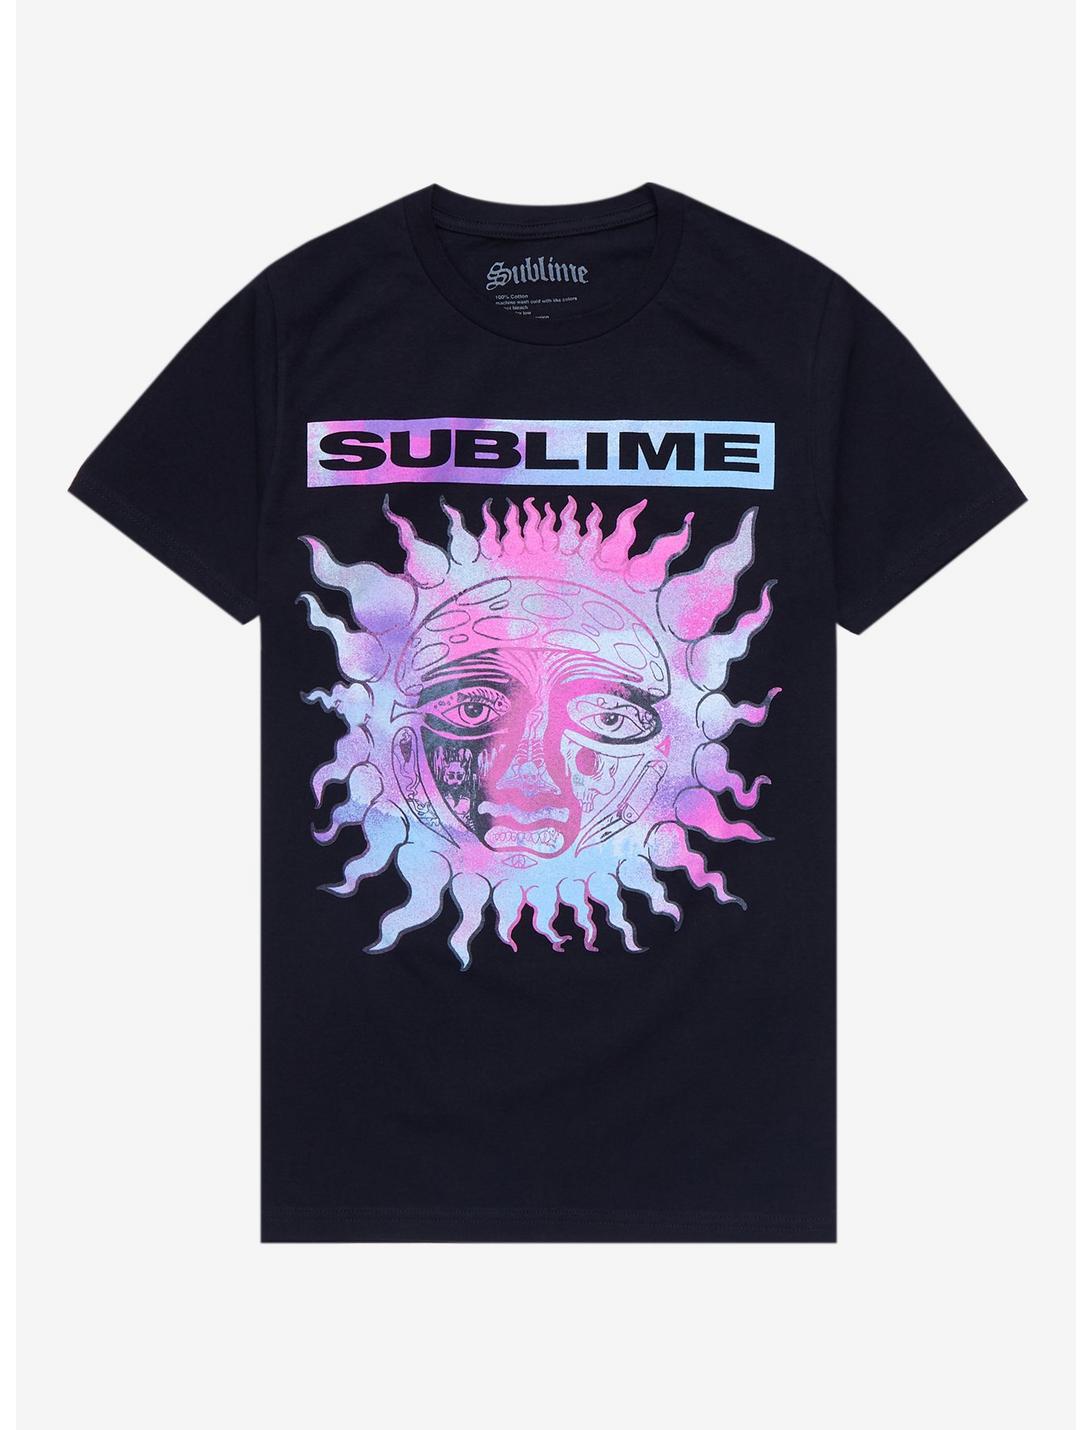 Sublime Pastel Sun Boyfriend Fit Girls T-Shirt, BLACK, hi-res